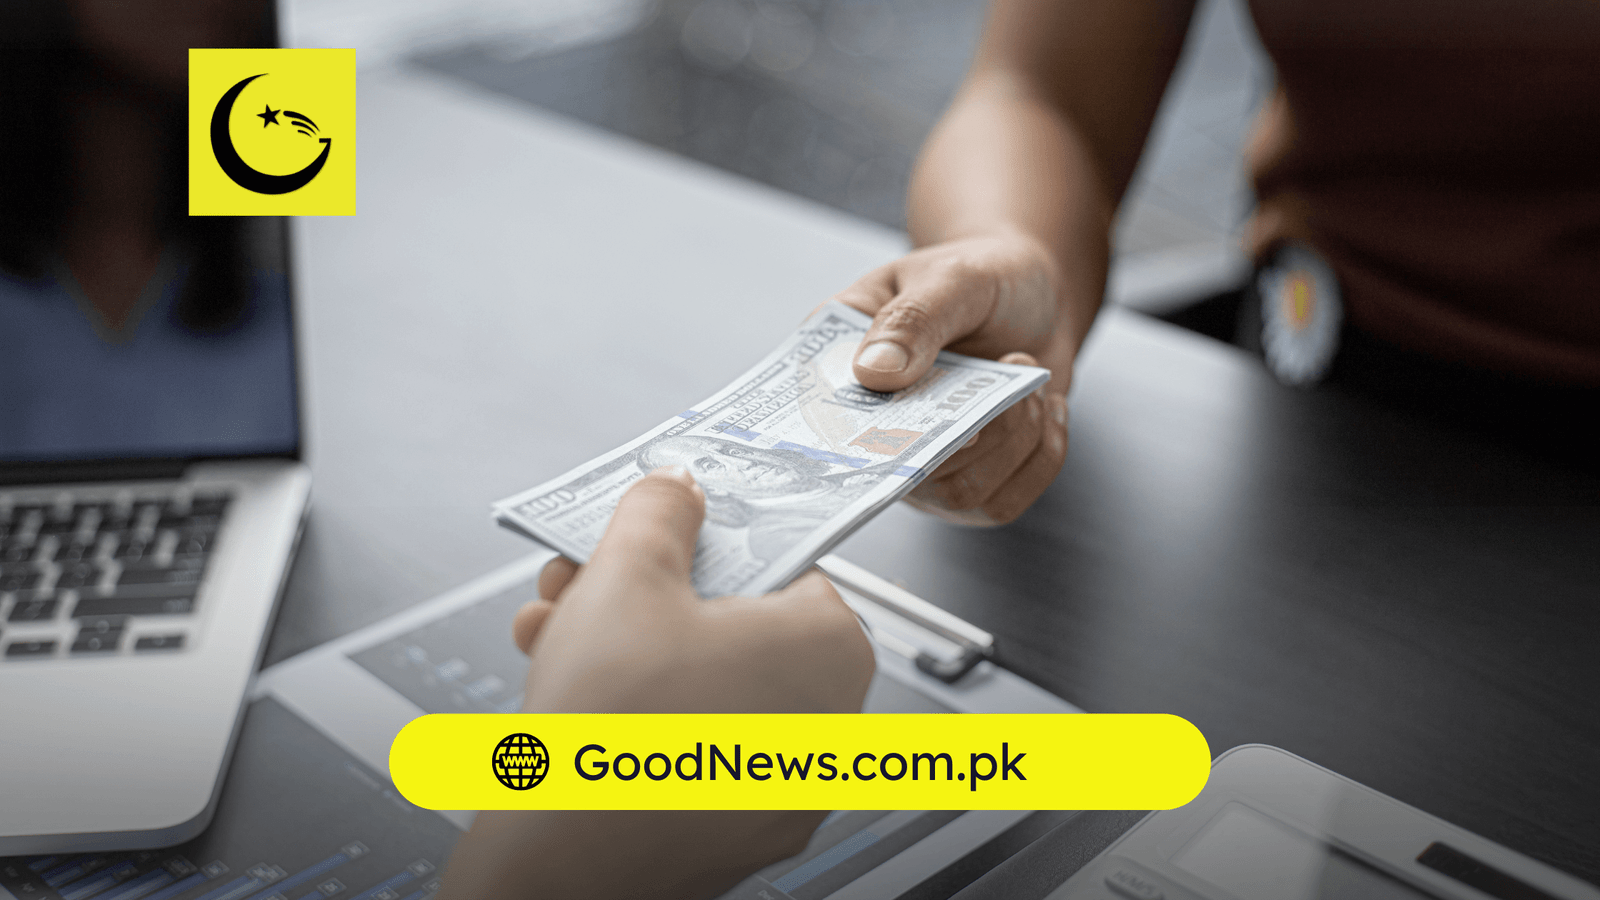 IT Exports of Pakistan surge to $1.53 Billion - Good News Pakistan